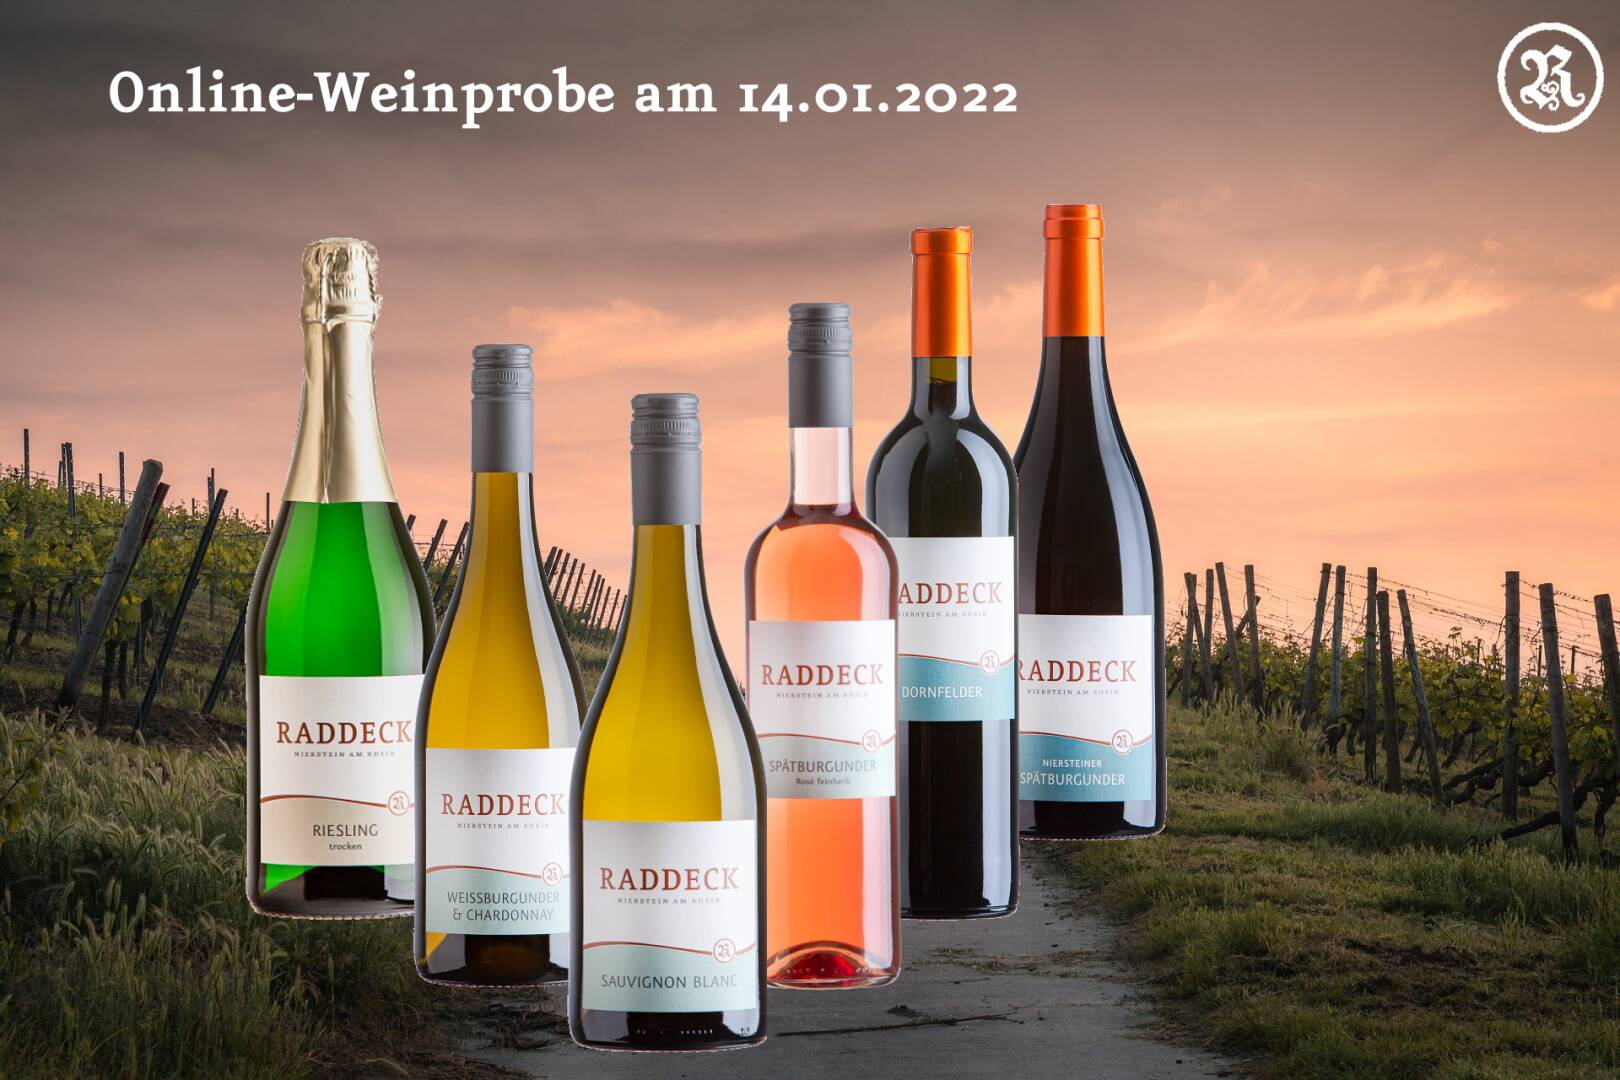 Online-Weinprobe am 14.01.2022